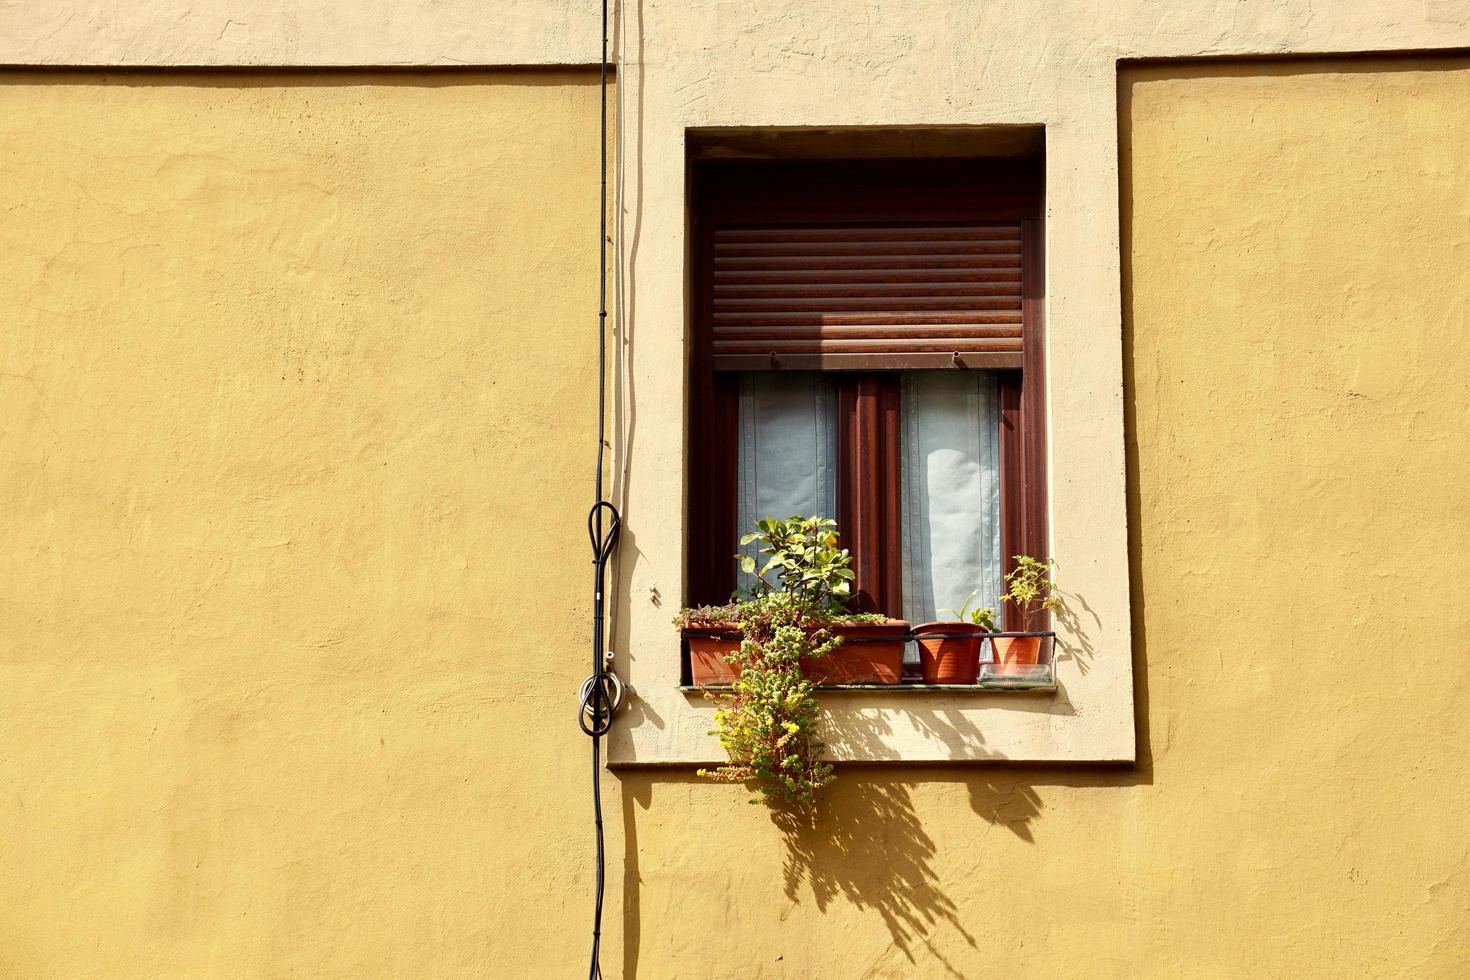 Fenster an der gelben Fassade des Hauses, Architektur in Bilbao City, Spanien foto